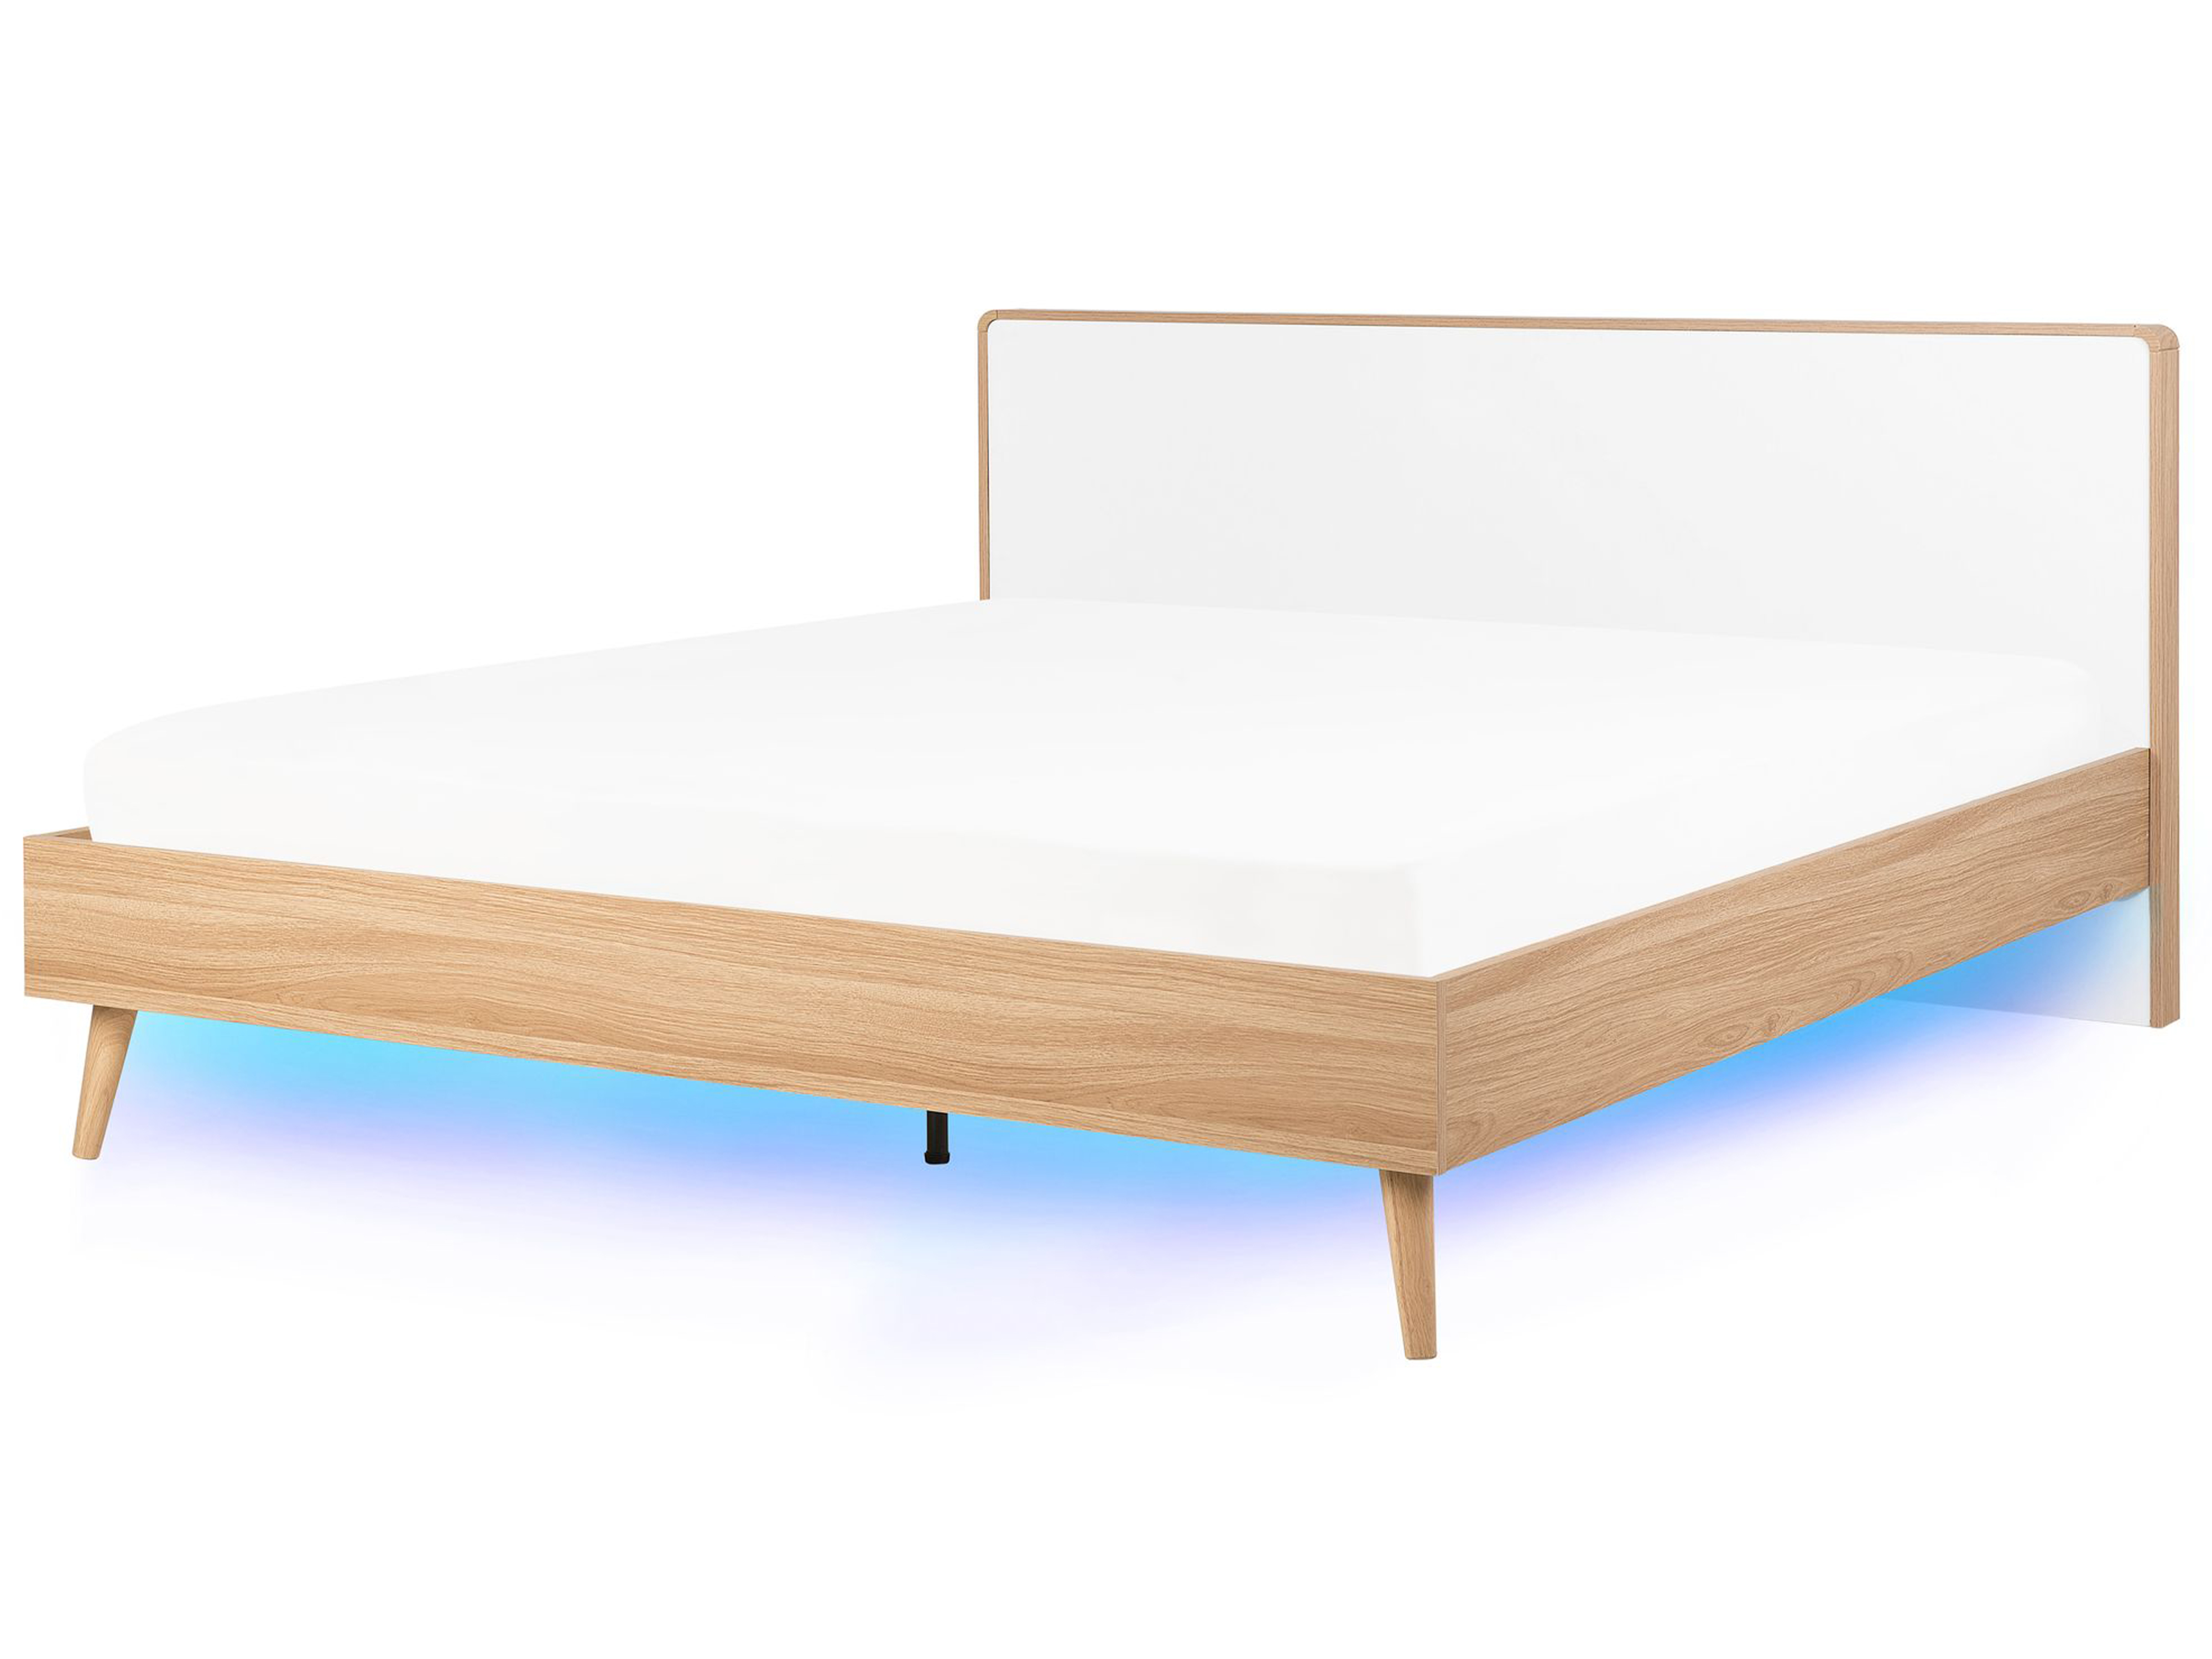 Eu Super King Size Bed Led Light Wood, Danish Bed Frame Australia